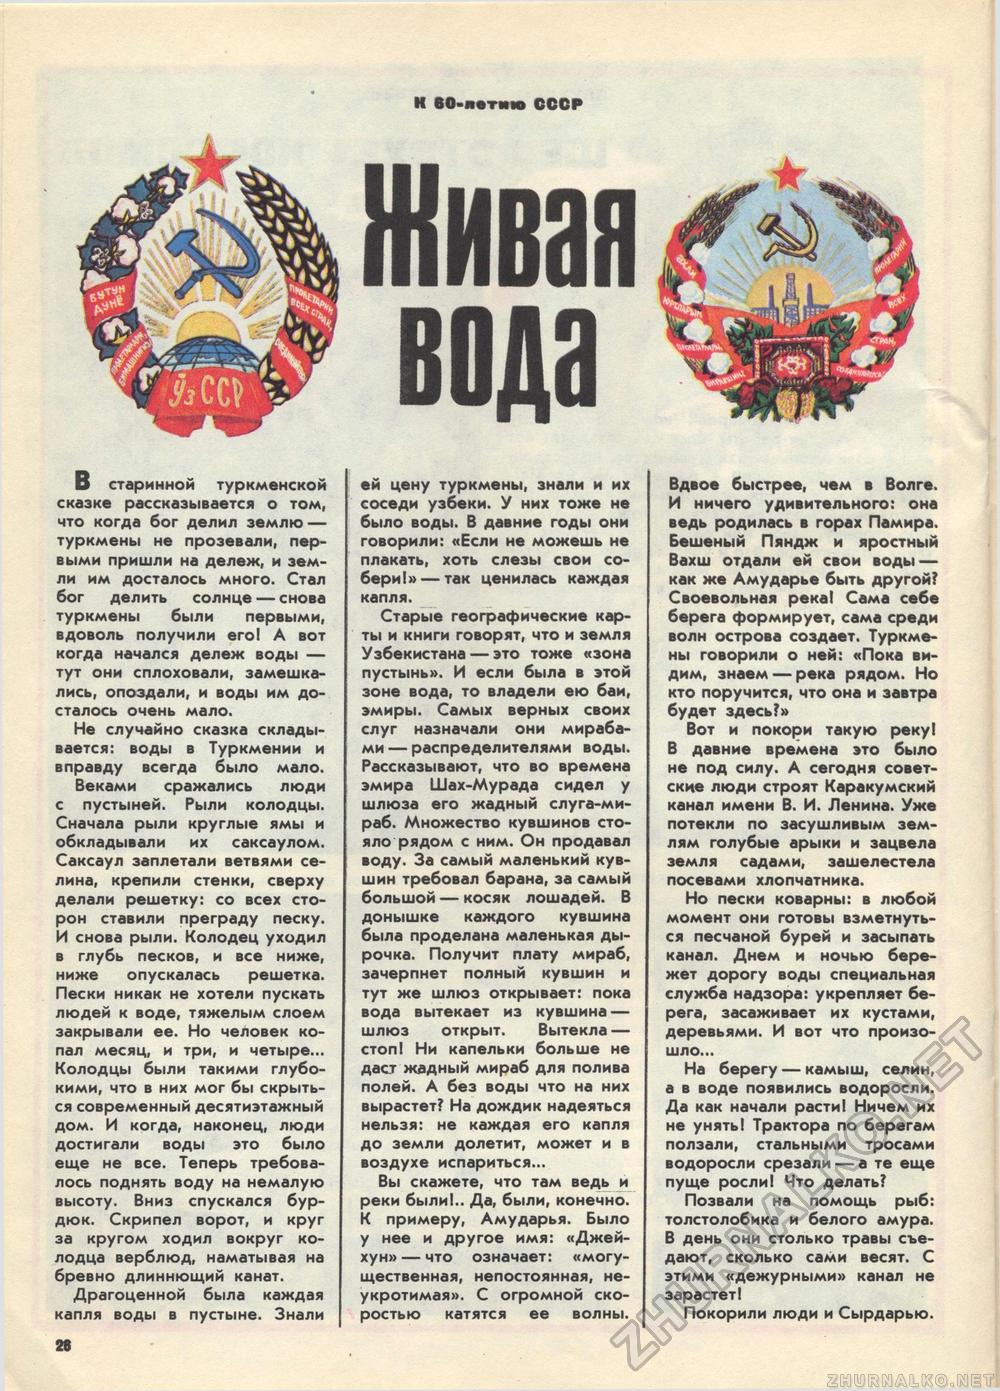  1982-05,  31